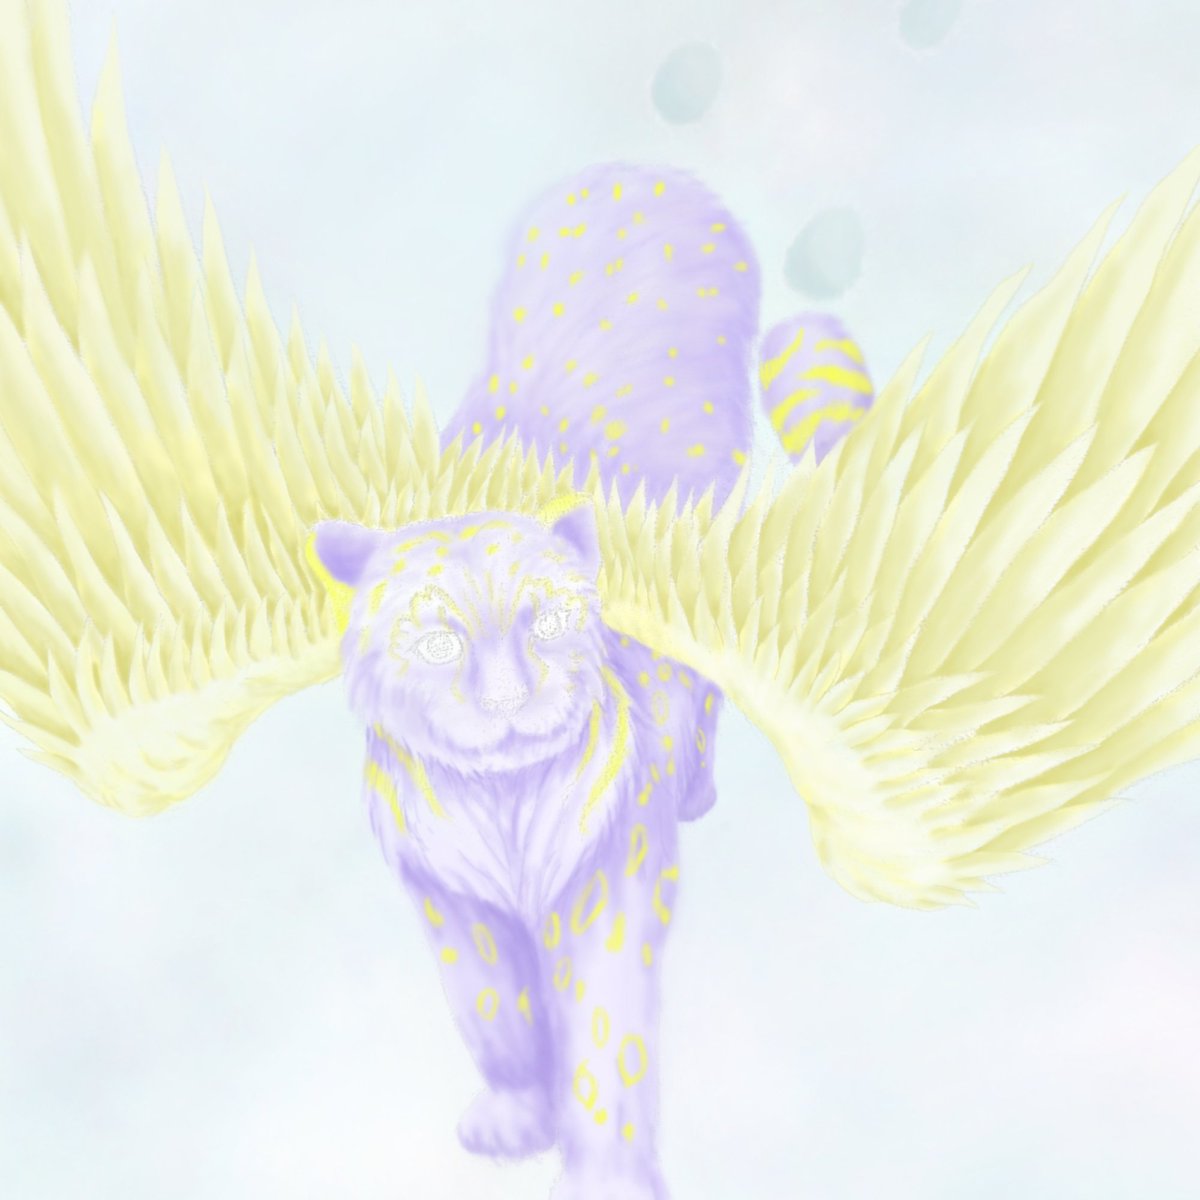 ☆Snow Leopard Angel☆
ユキヒョウの創作動物です！
今日は翼に色付けしました！
#動物画
#animalart
#猫科動物
#絵描き